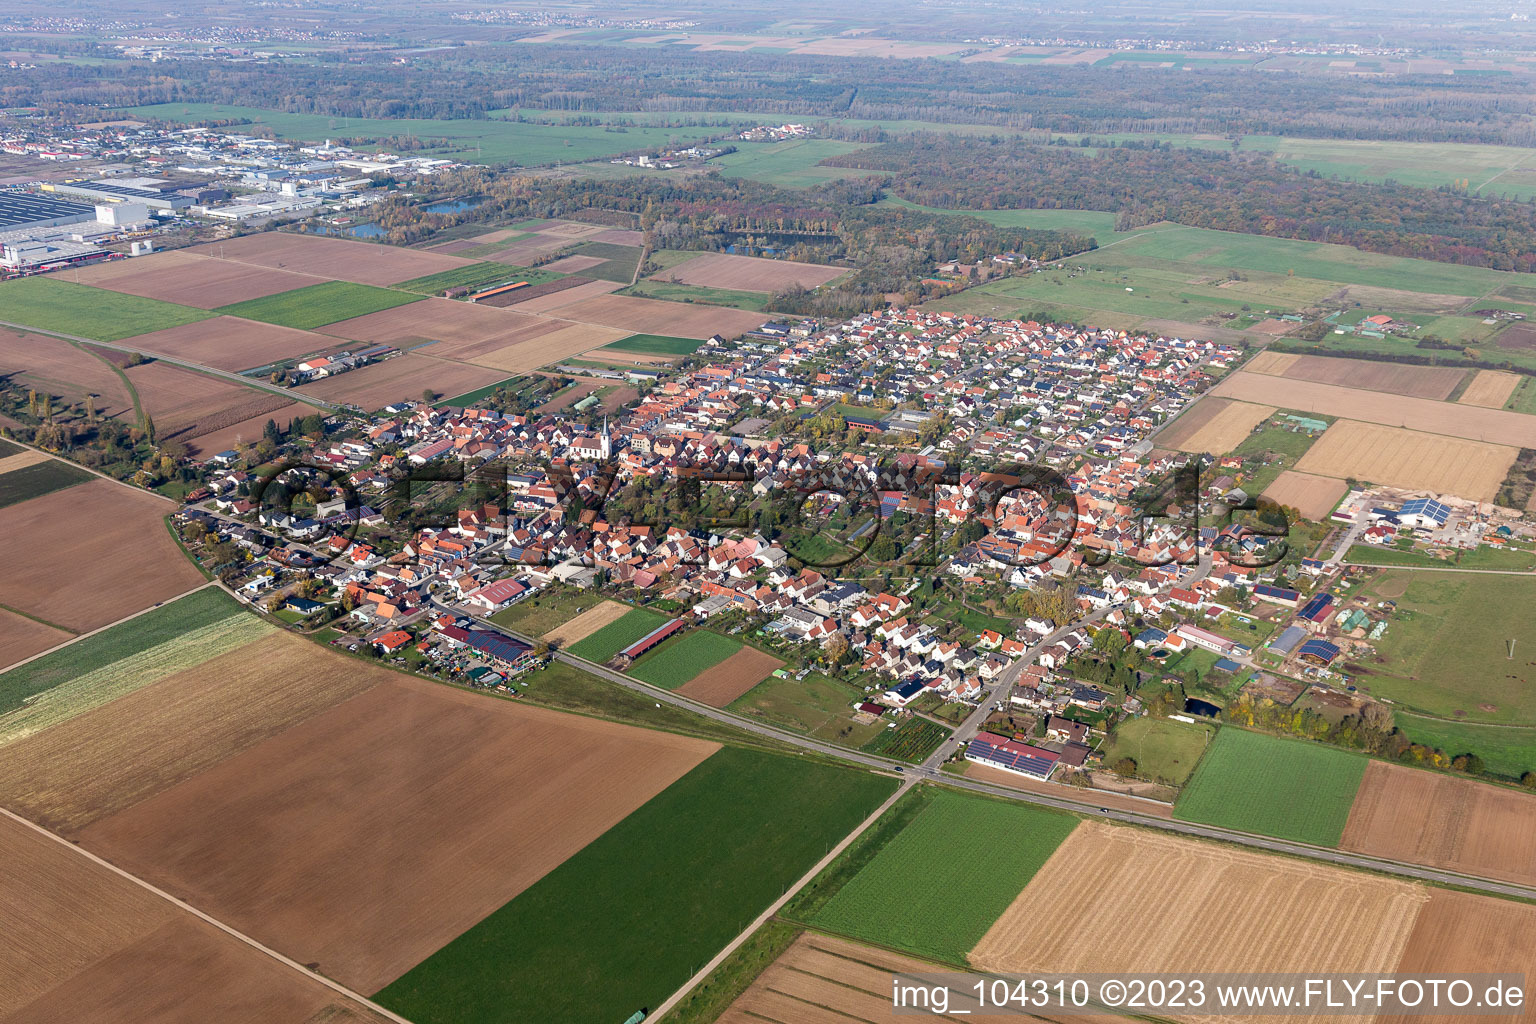 Ottersheim bei Landau dans le département Rhénanie-Palatinat, Allemagne vue du ciel